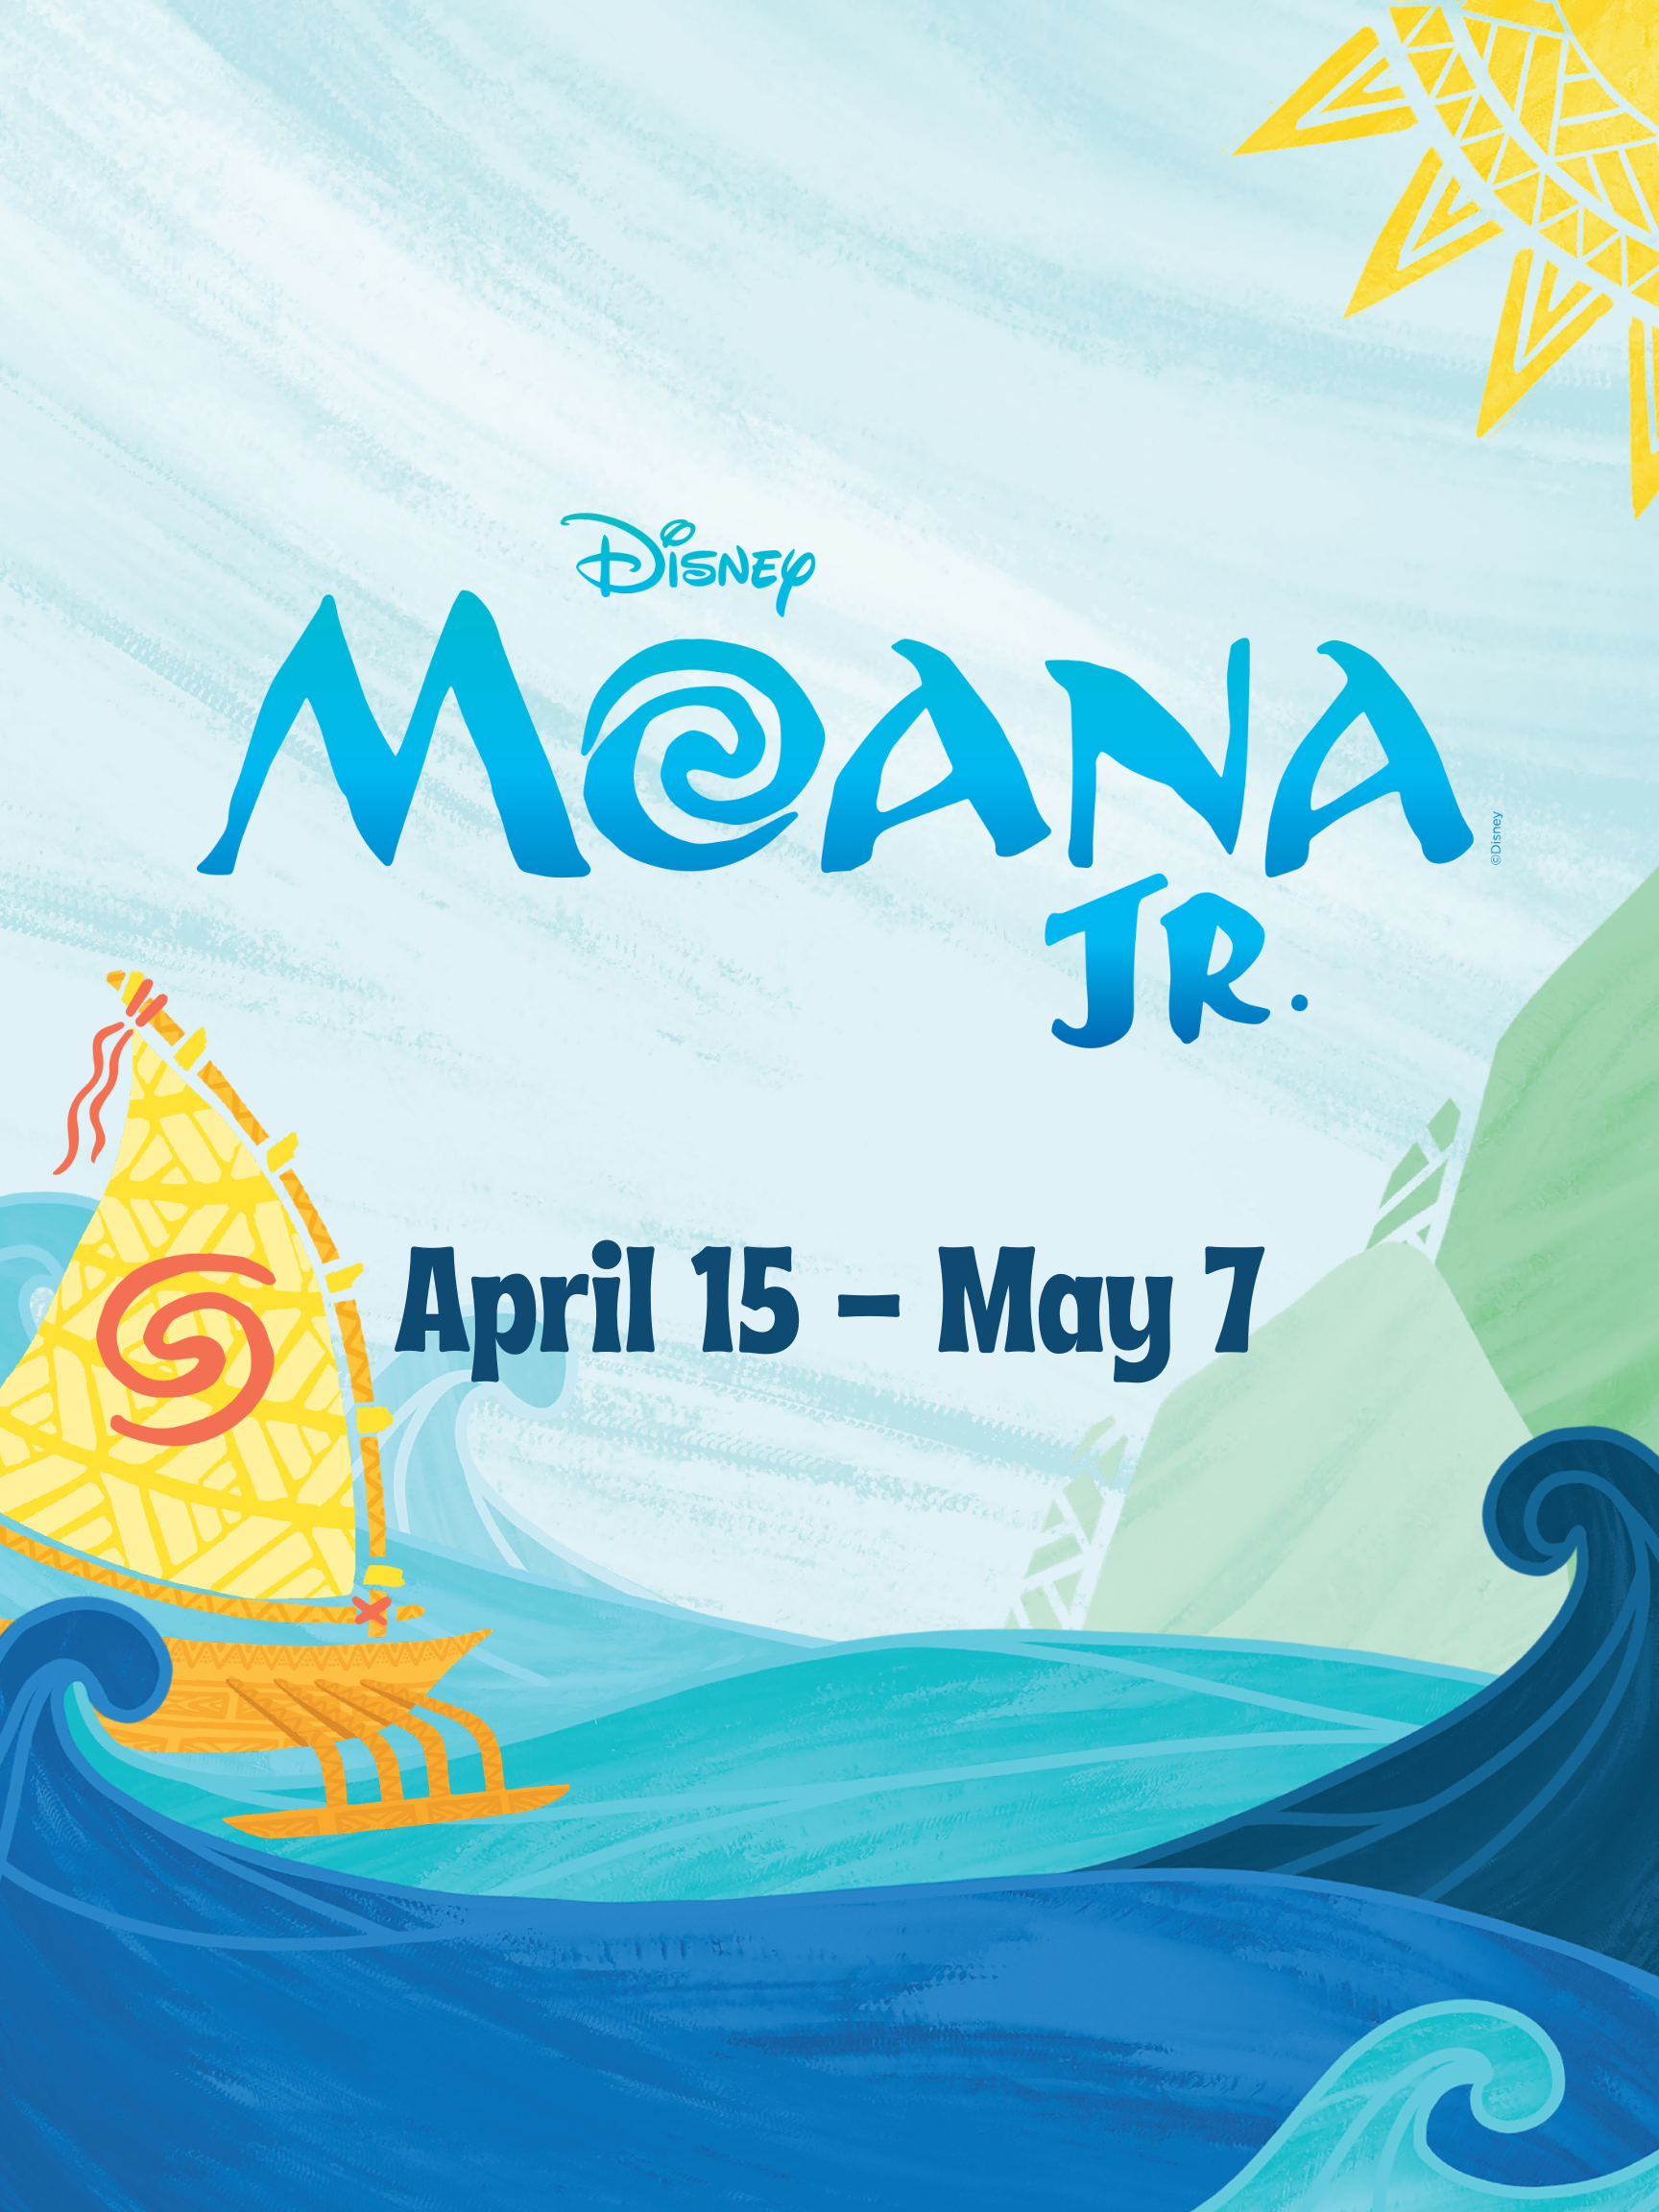 Disney's Moana JR. — The Media Theatre